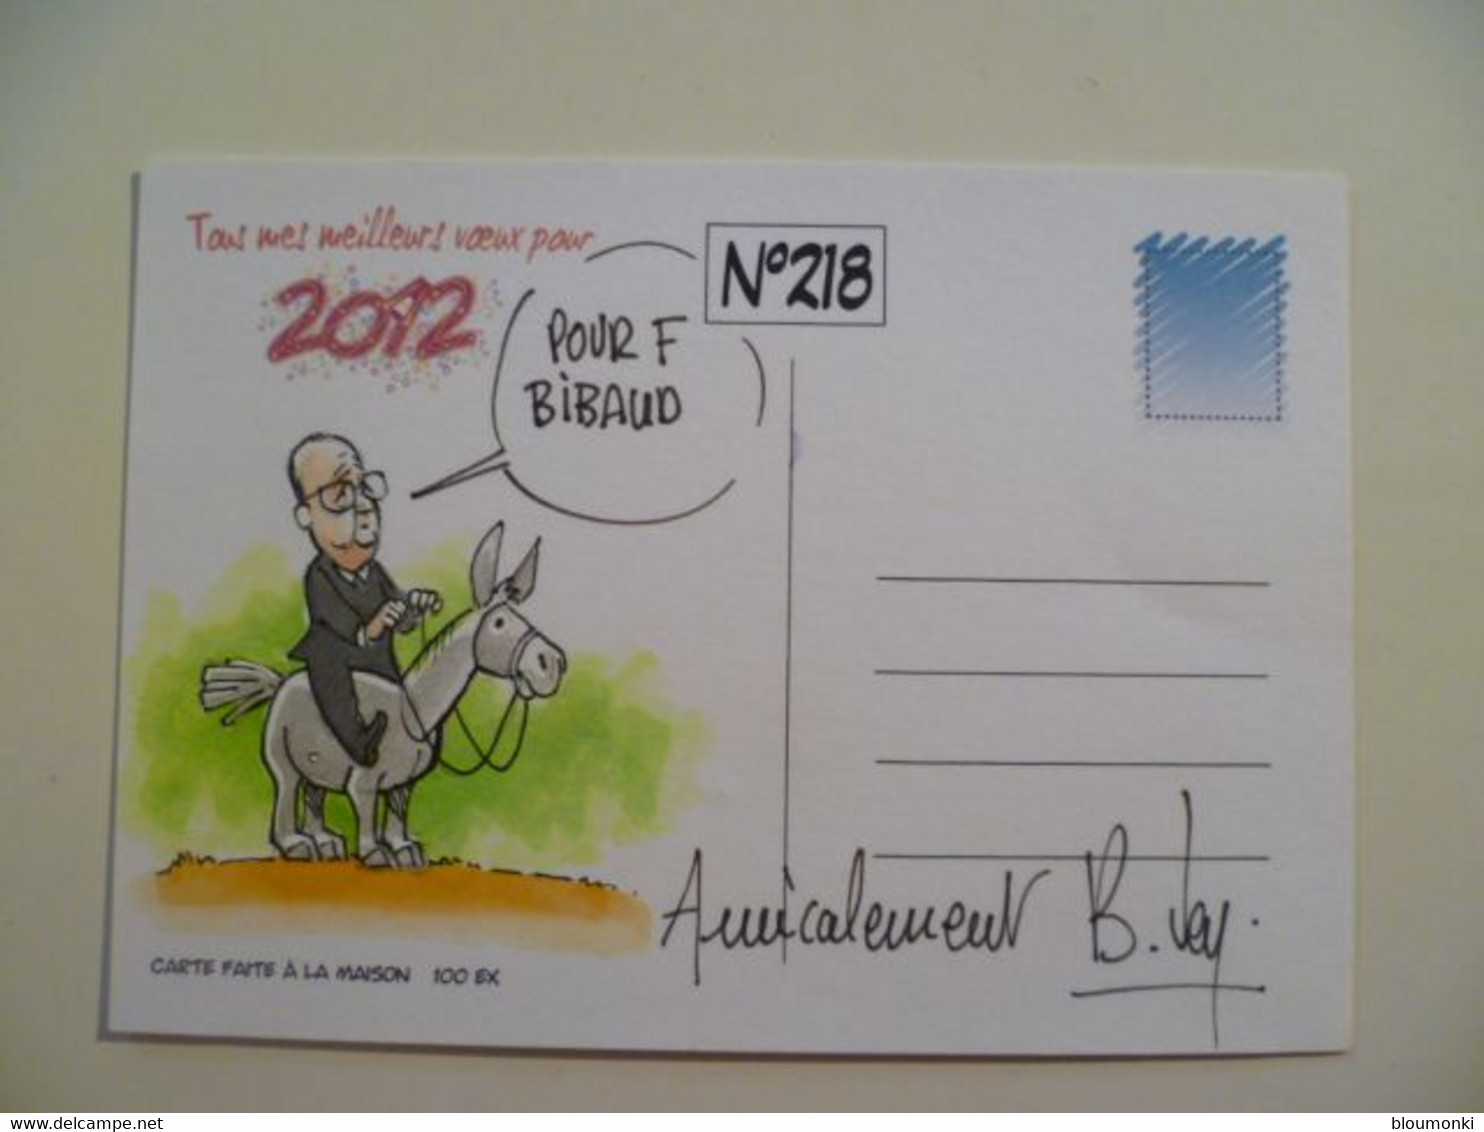 Carte Postale Illustrateur Bernard VEYRI / Dessin Unique Dédicace F Bibaud /  Hollande 100 Ex - Veyri, Bernard